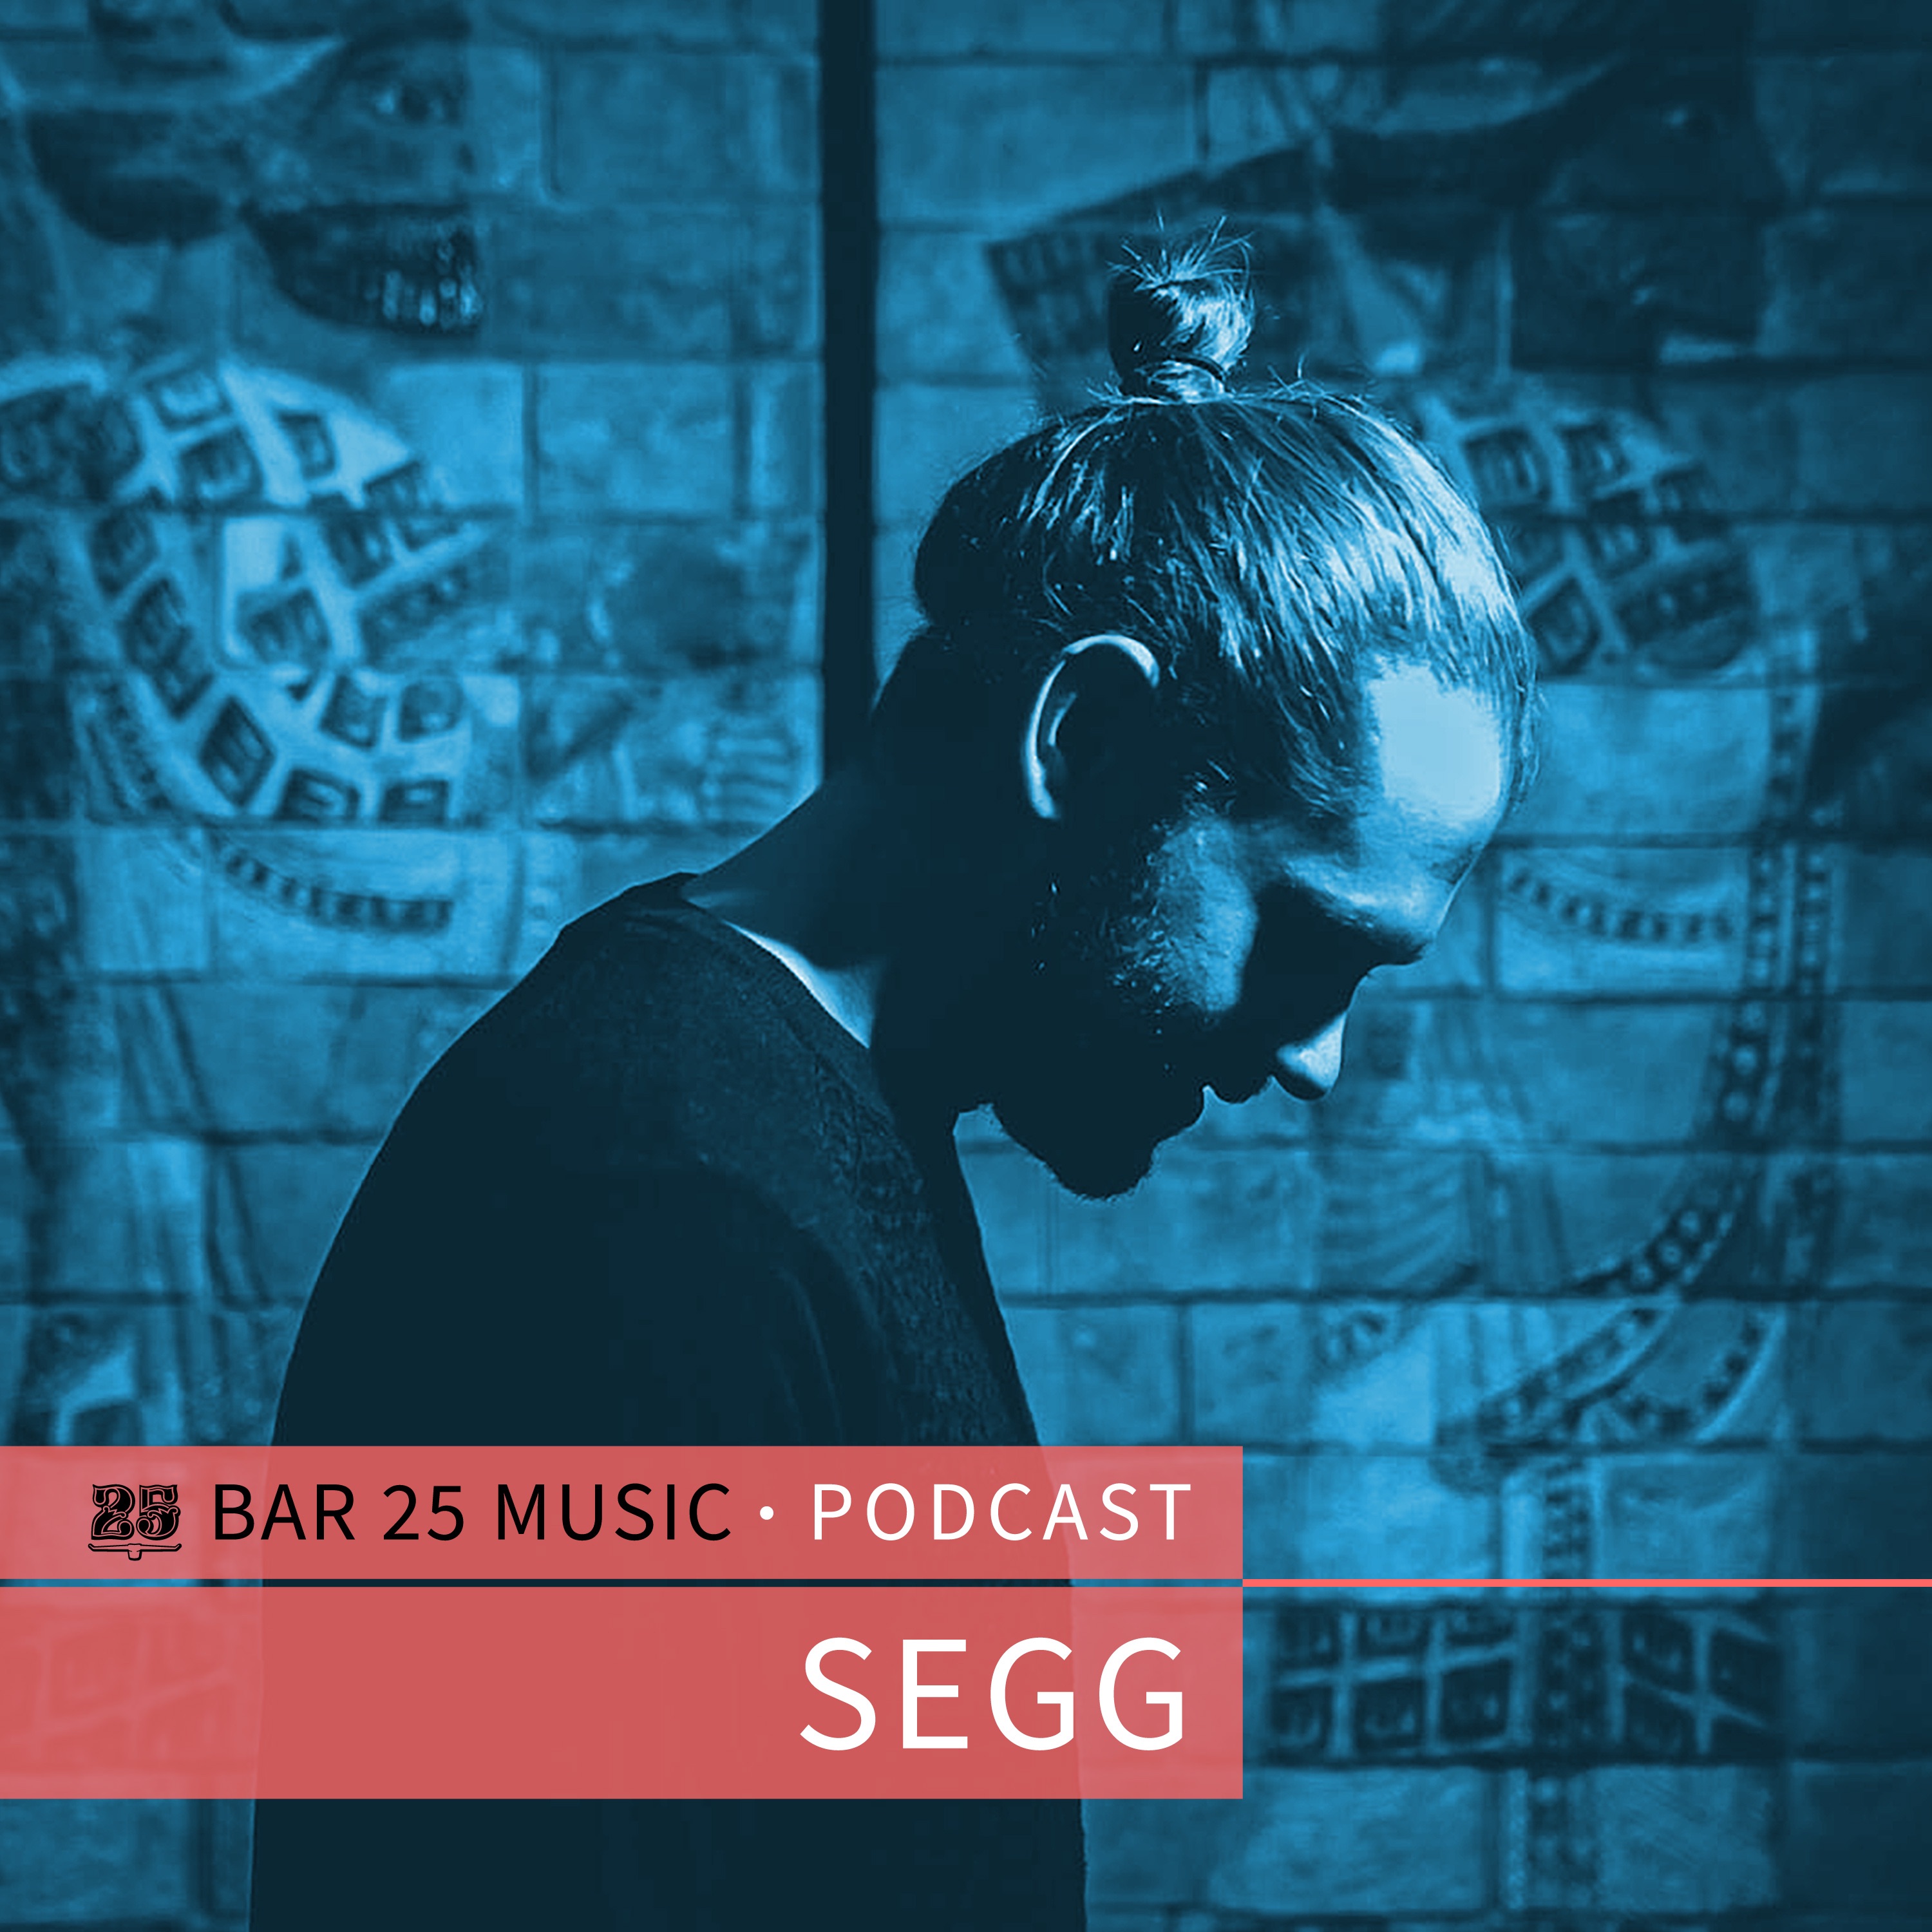 डाउनलोड करा Bar 25 Music Podcast #125 - SEGG